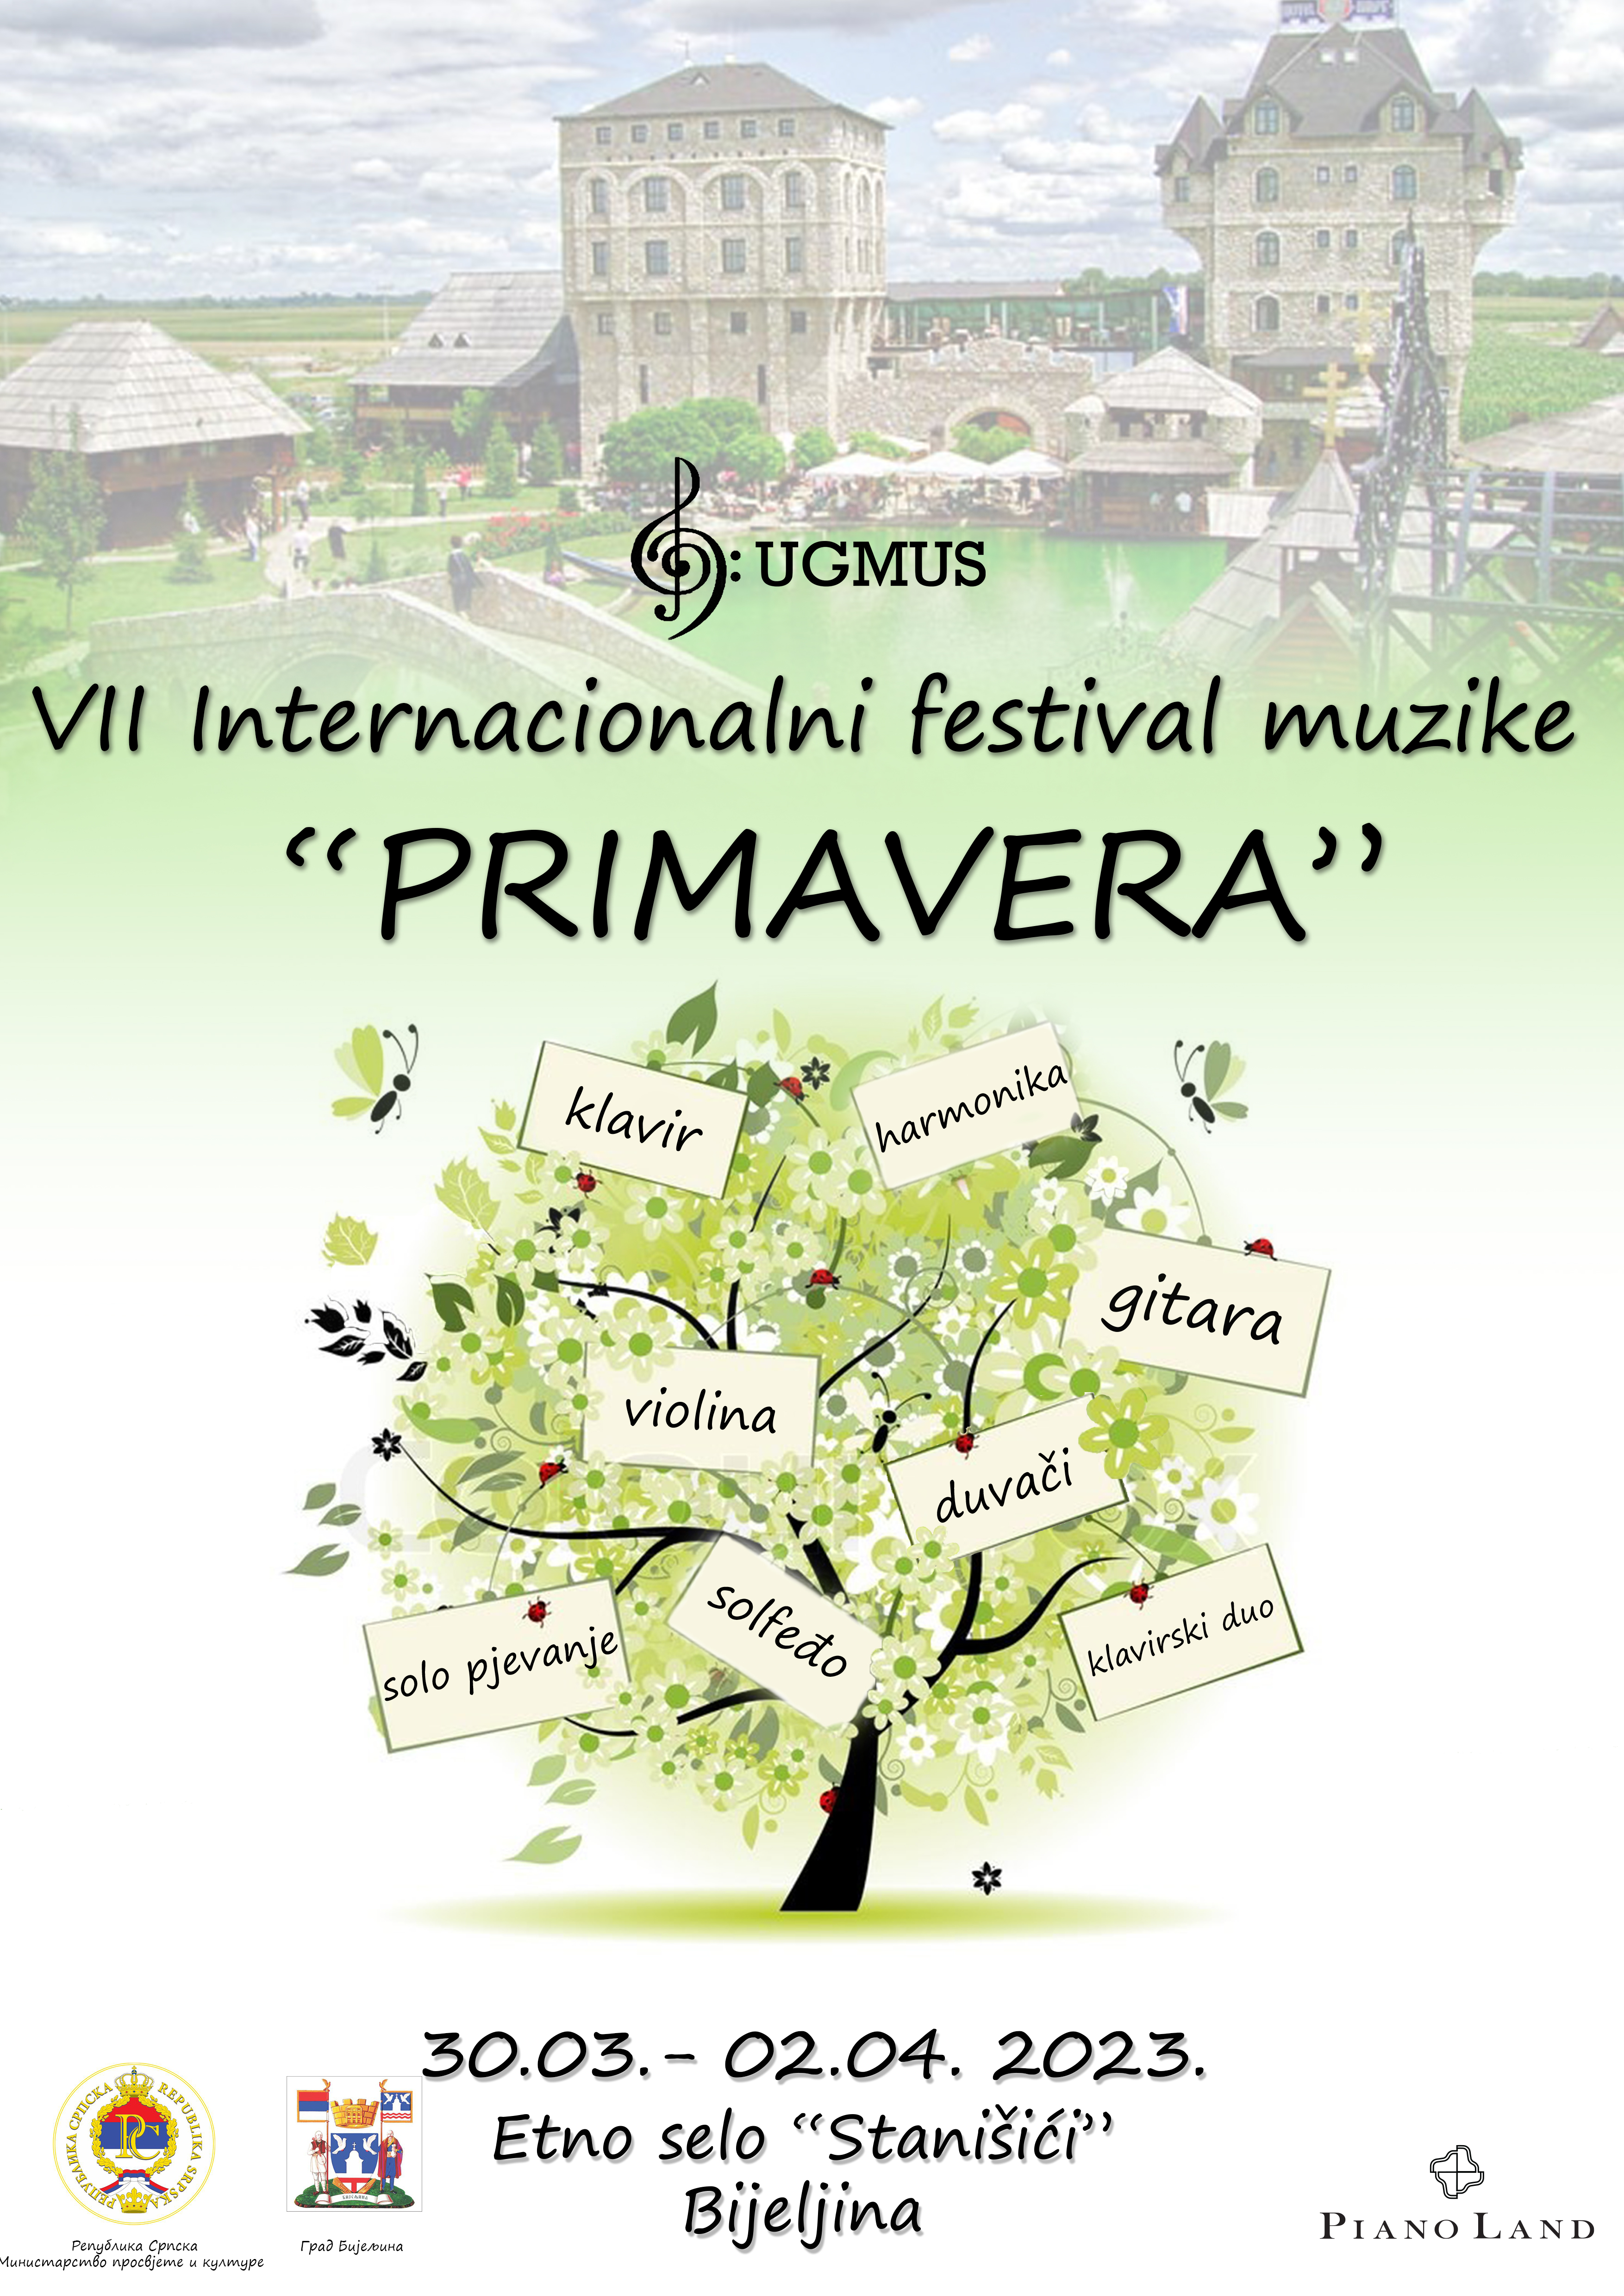 Bijeljina: Internacionalni festival muzike "Primavera" od 30. marta do 2. aprila